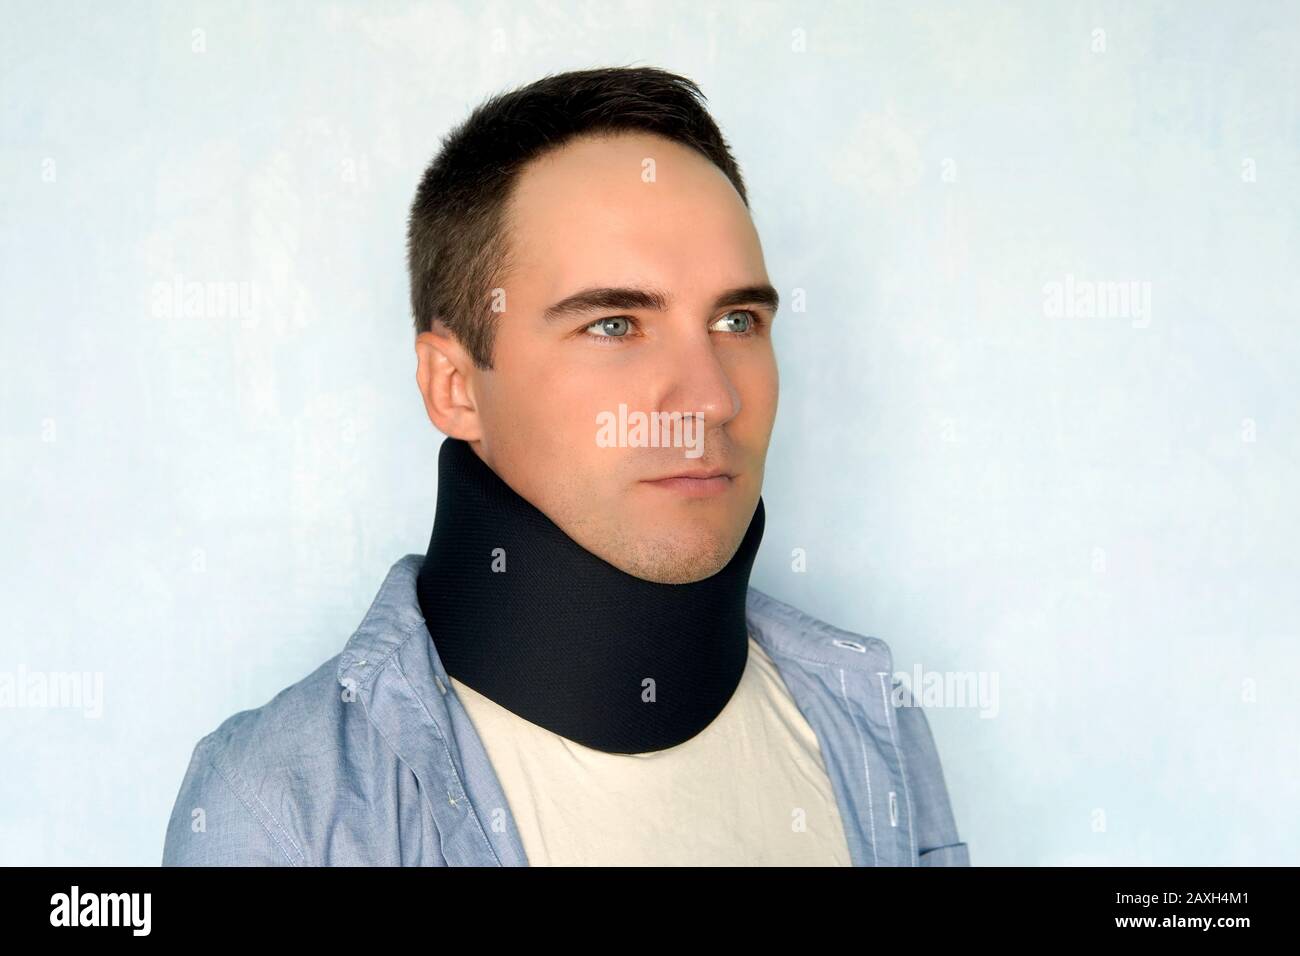 Medizinische zervikalen Kragen. Ein kranker Mann mit einem schwarzen Halsband einen Hals Bruch zu beheben. Stockfoto